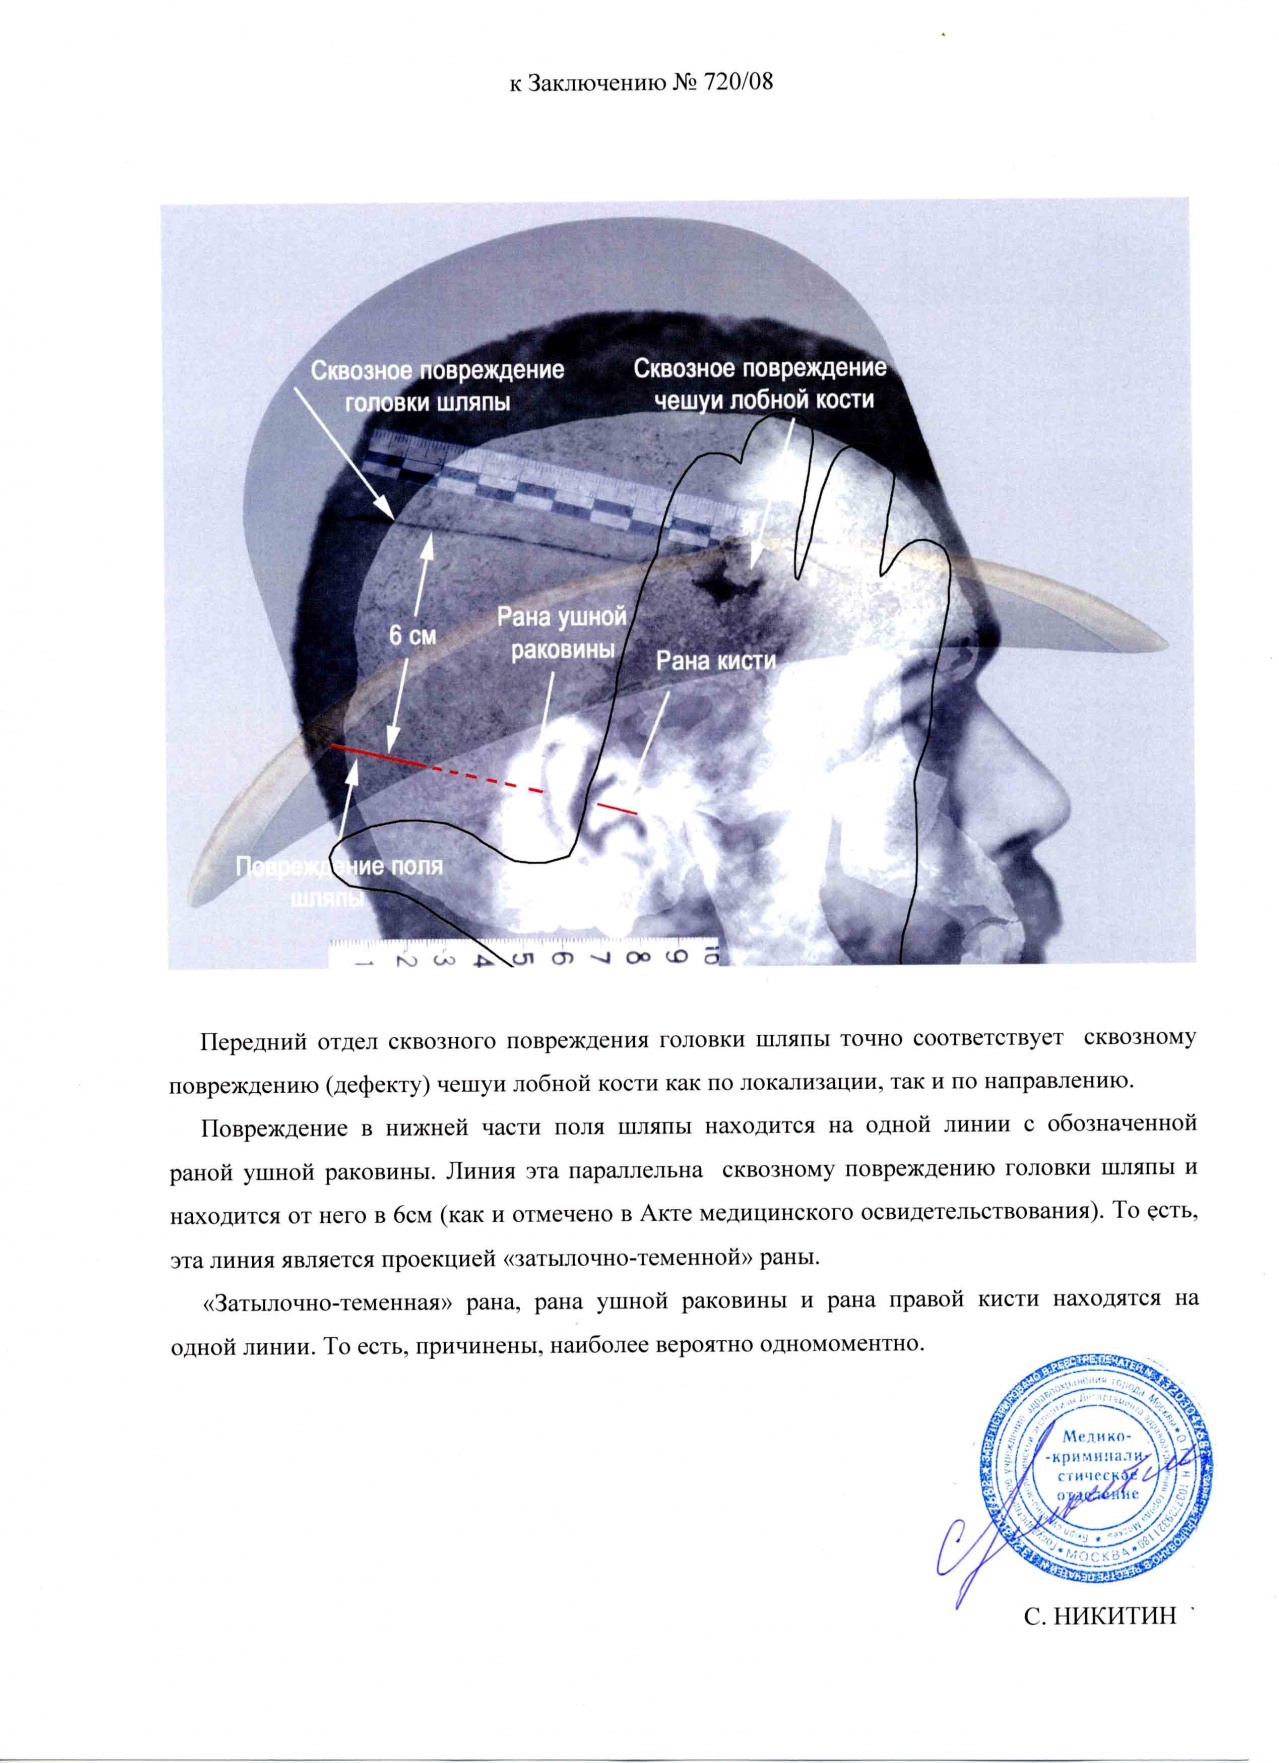 Схема совмещения повреждения черепа великого князя Николая Александровича. Фотография шляпы великого князя Николая Александровича к заключению экспертизы. 10 сентября 2008 г.